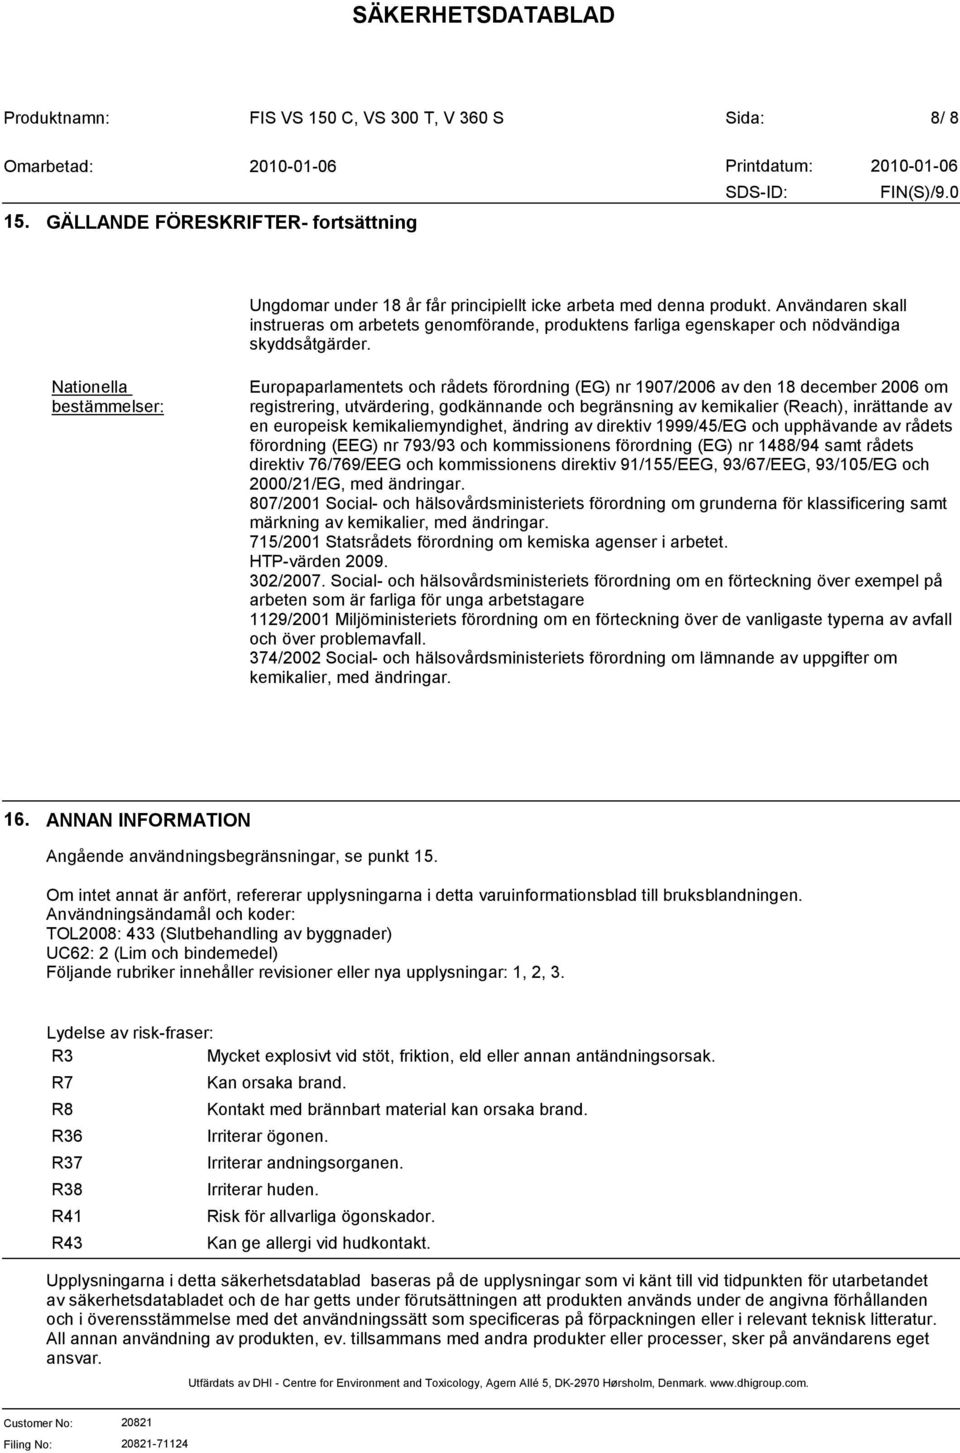 Nationella bestämmelser: Europaparlamentets och rådets förordning (EG) nr 1907/2006 av den 18 december 2006 om registrering, utvärdering, godkännande och begränsning av kemikalier (Reach), inrättande